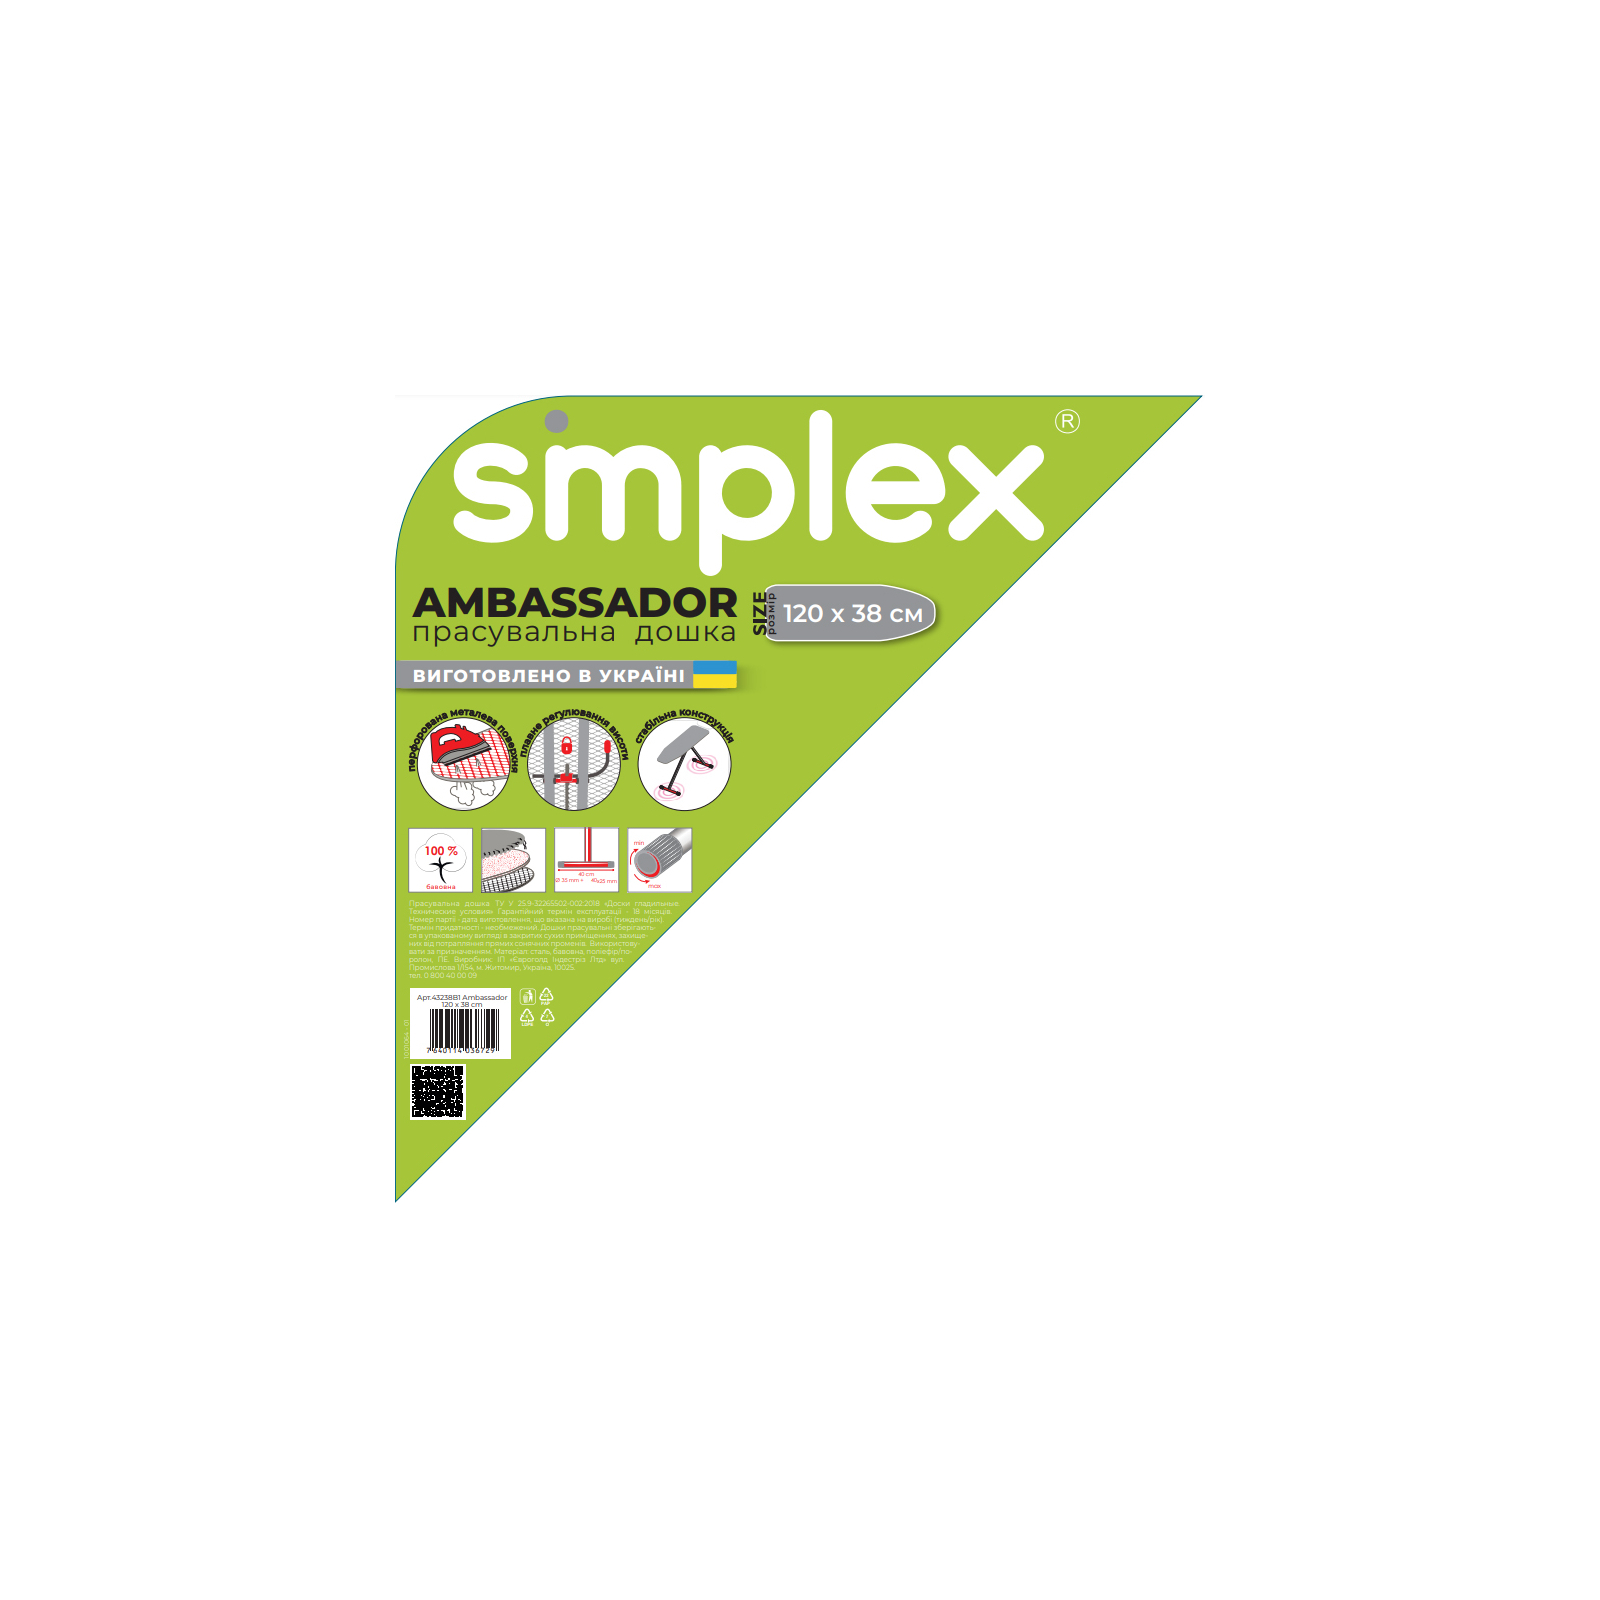 Гладильная доска Simplex 120 х 38 см (43238B1) изображение 2